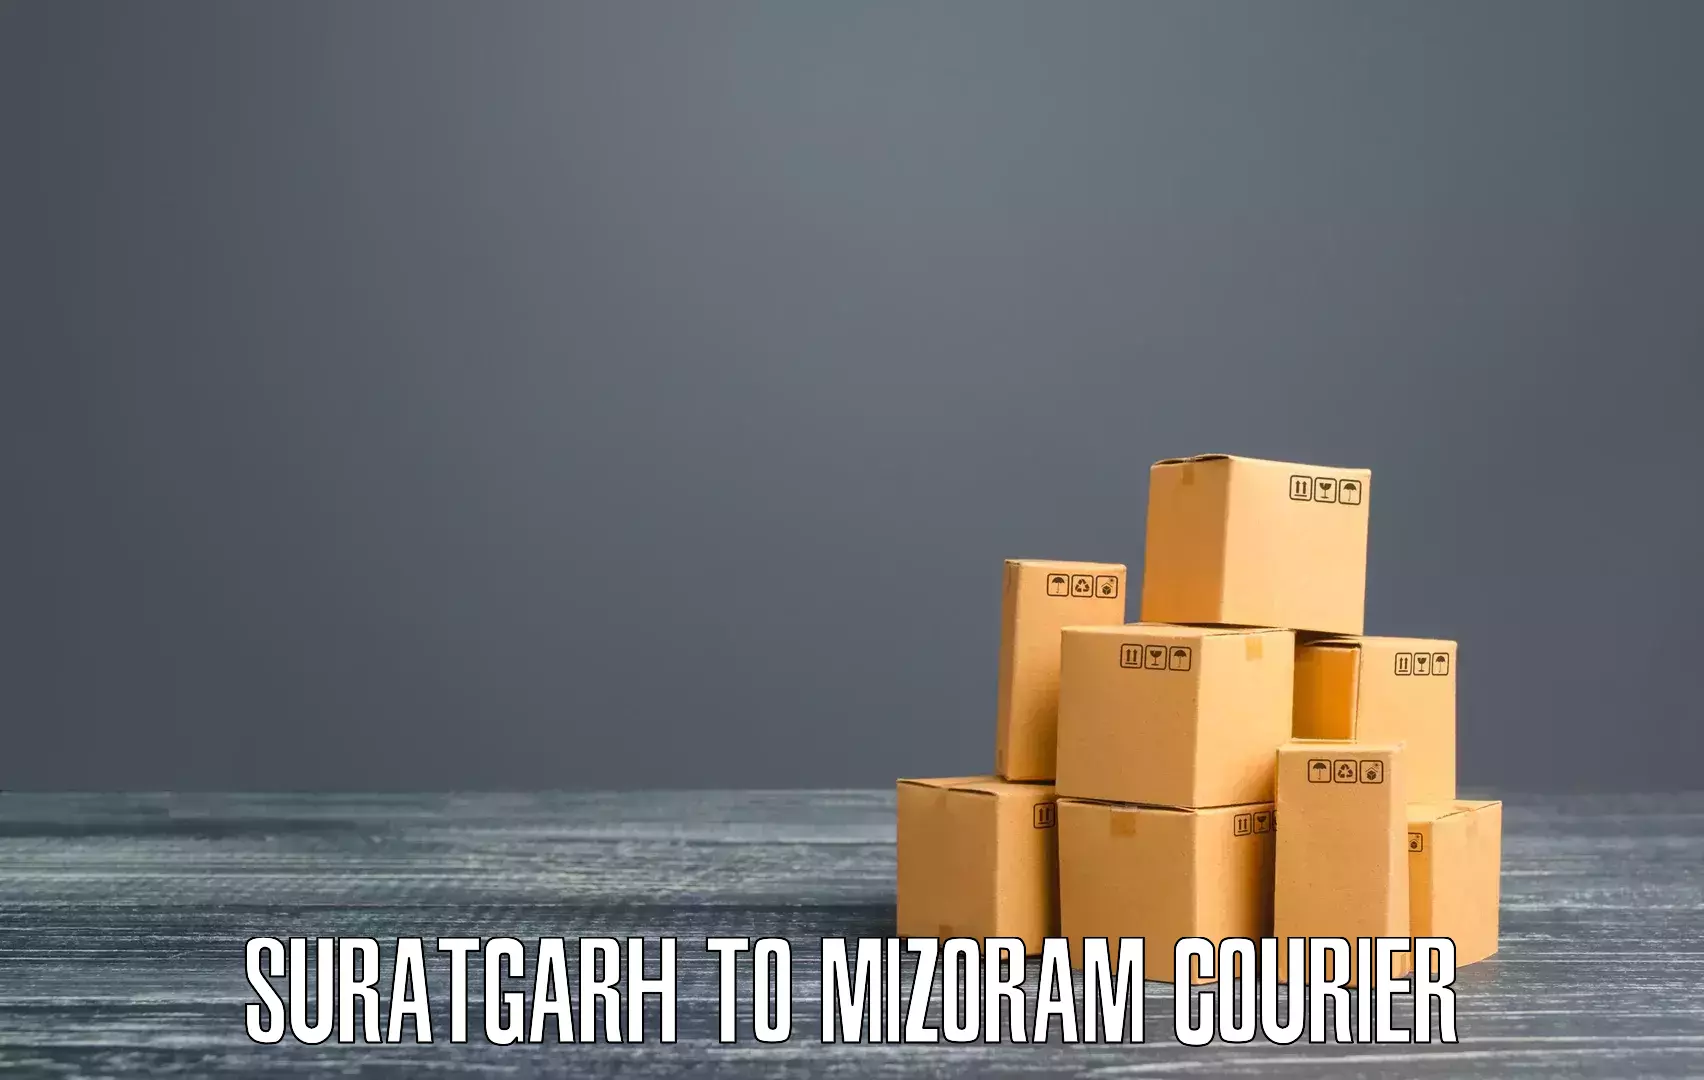 Multi-city courier Suratgarh to Darlawn